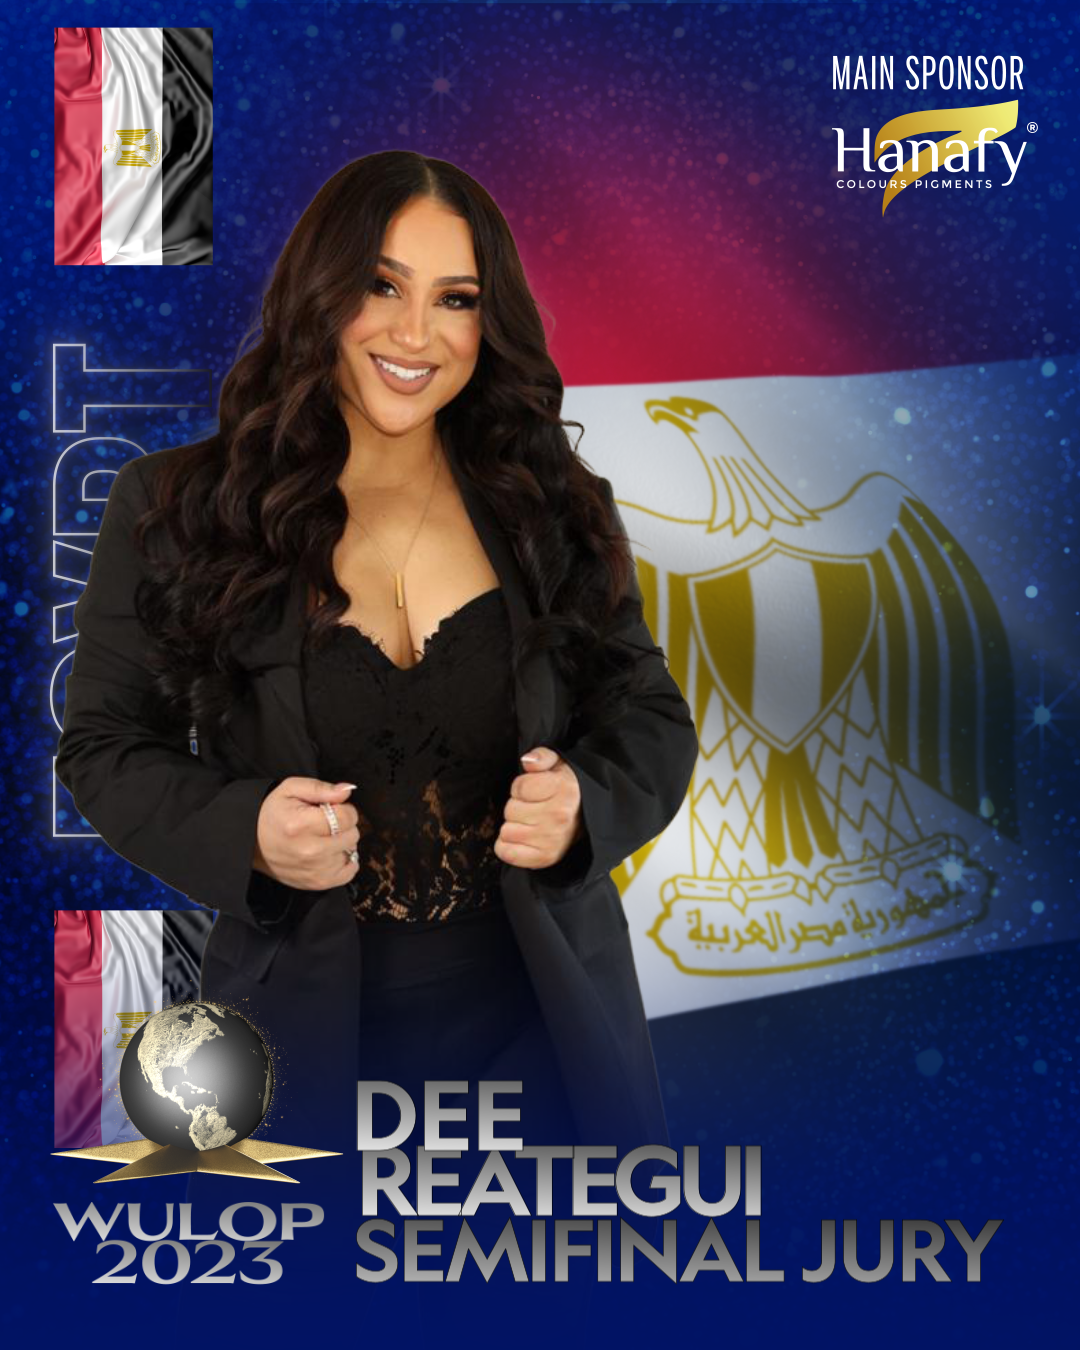 Dee Reategui EGYPT